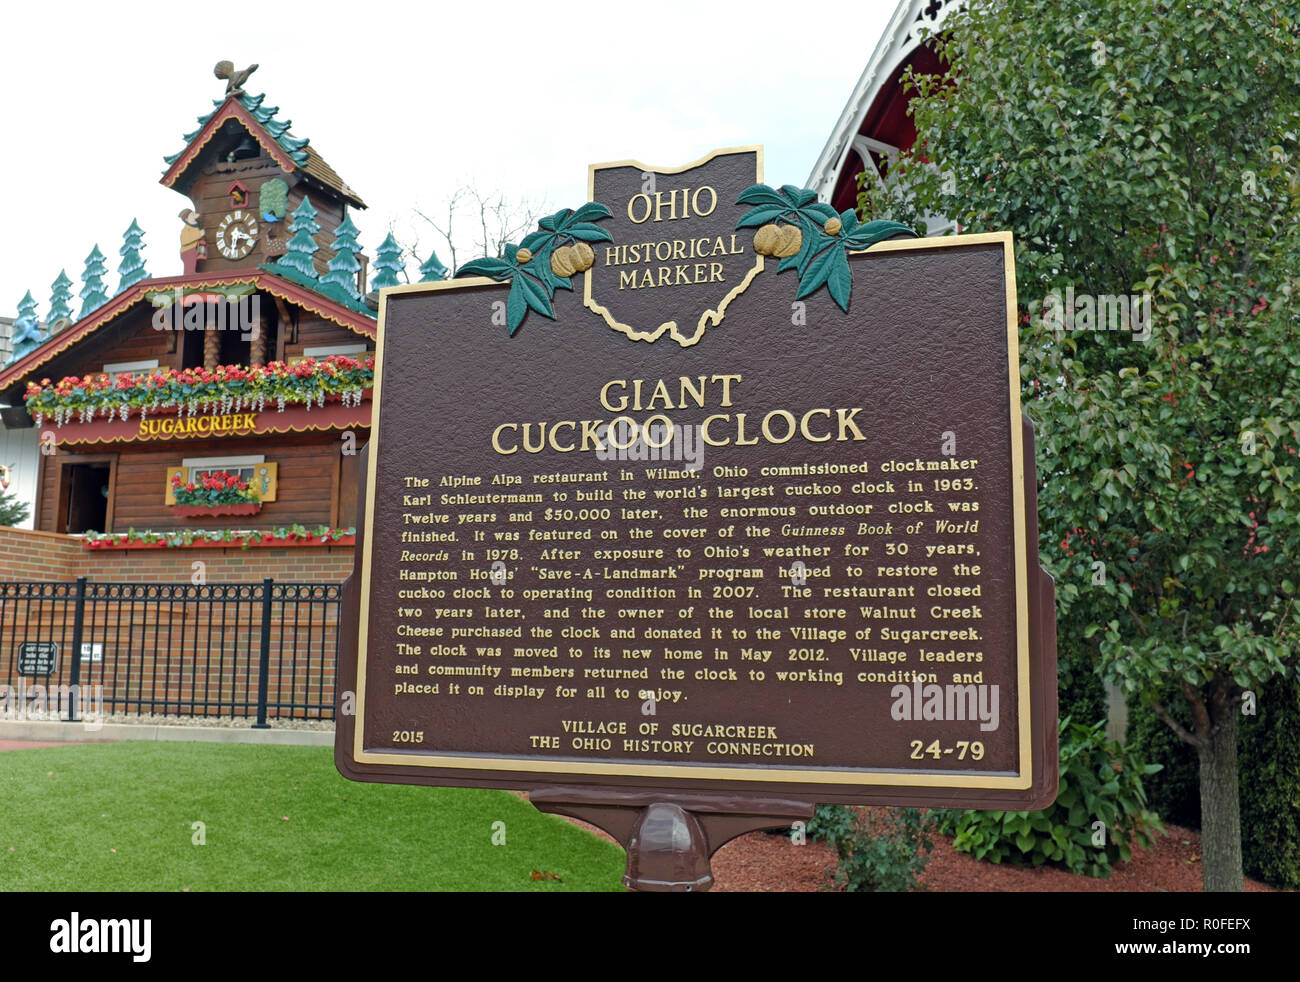 Il più grande orologio a cucù all'aperto al mondo si trova a Sugarcreek, Ohio, Stati Uniti, dove si trova un marcatore storico dell'Ohio che spiega la sua storia. Foto Stock